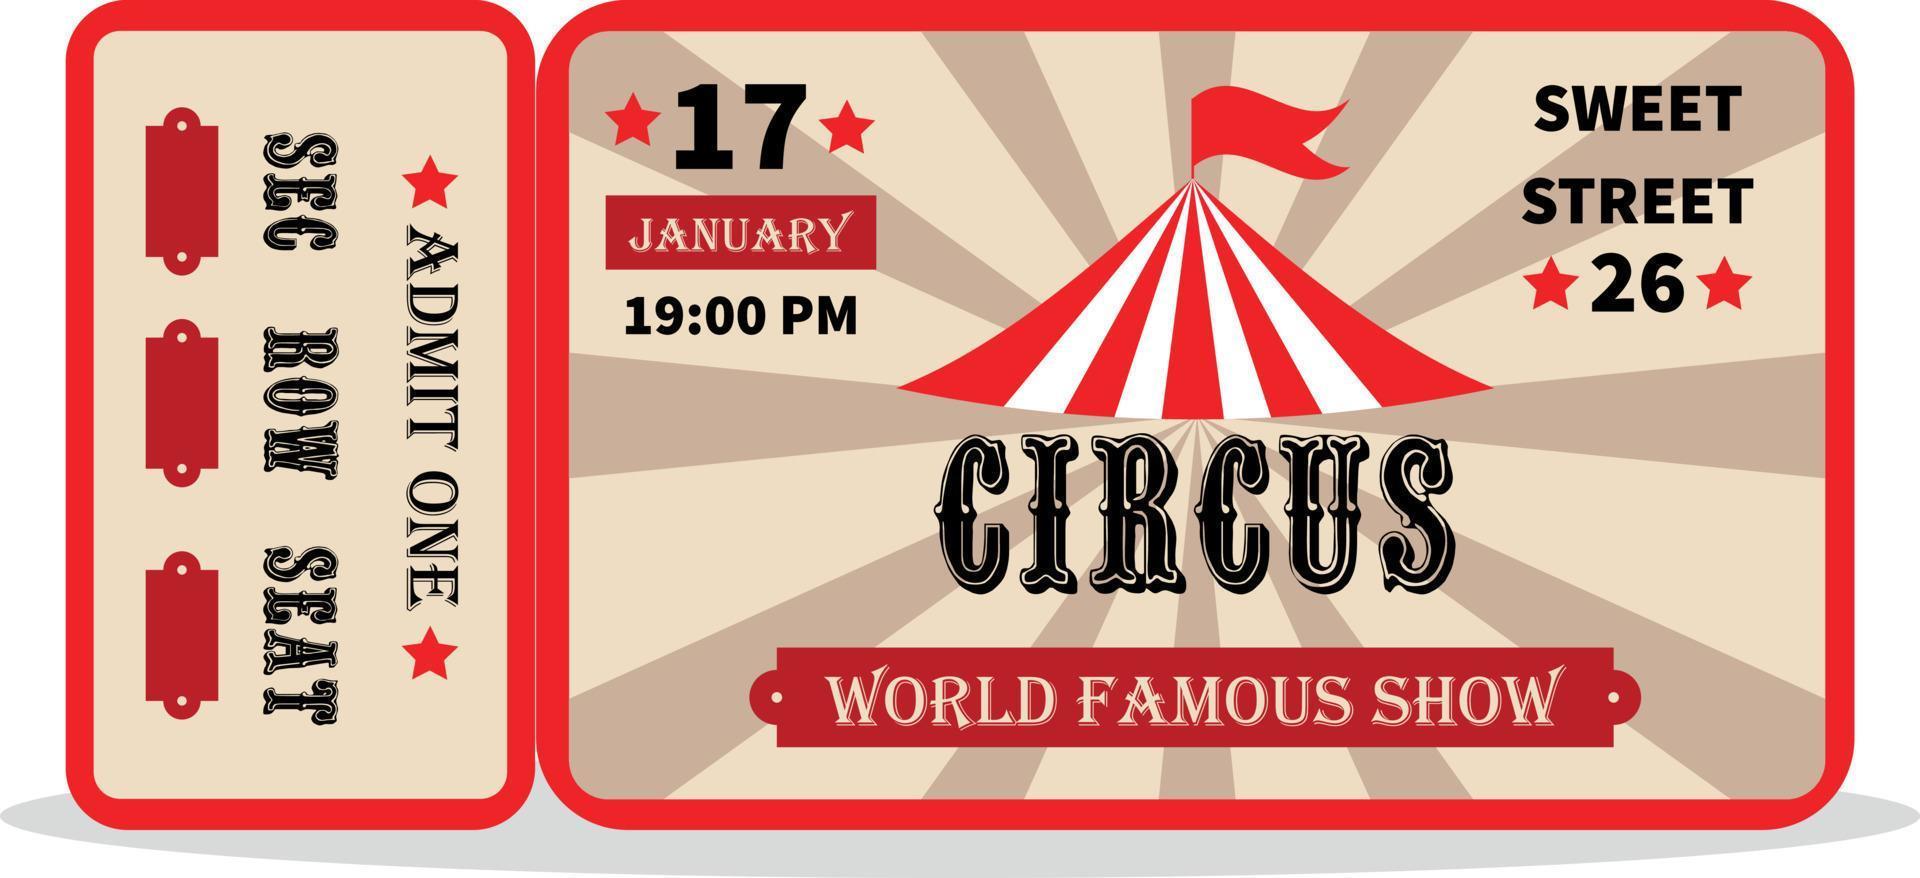 wijnoogst circus ticket. toegeven een coupon. illustratie van een wijnoogst en retro ontwerp circus ticket. vector circus luxe groet kaart illustratie.